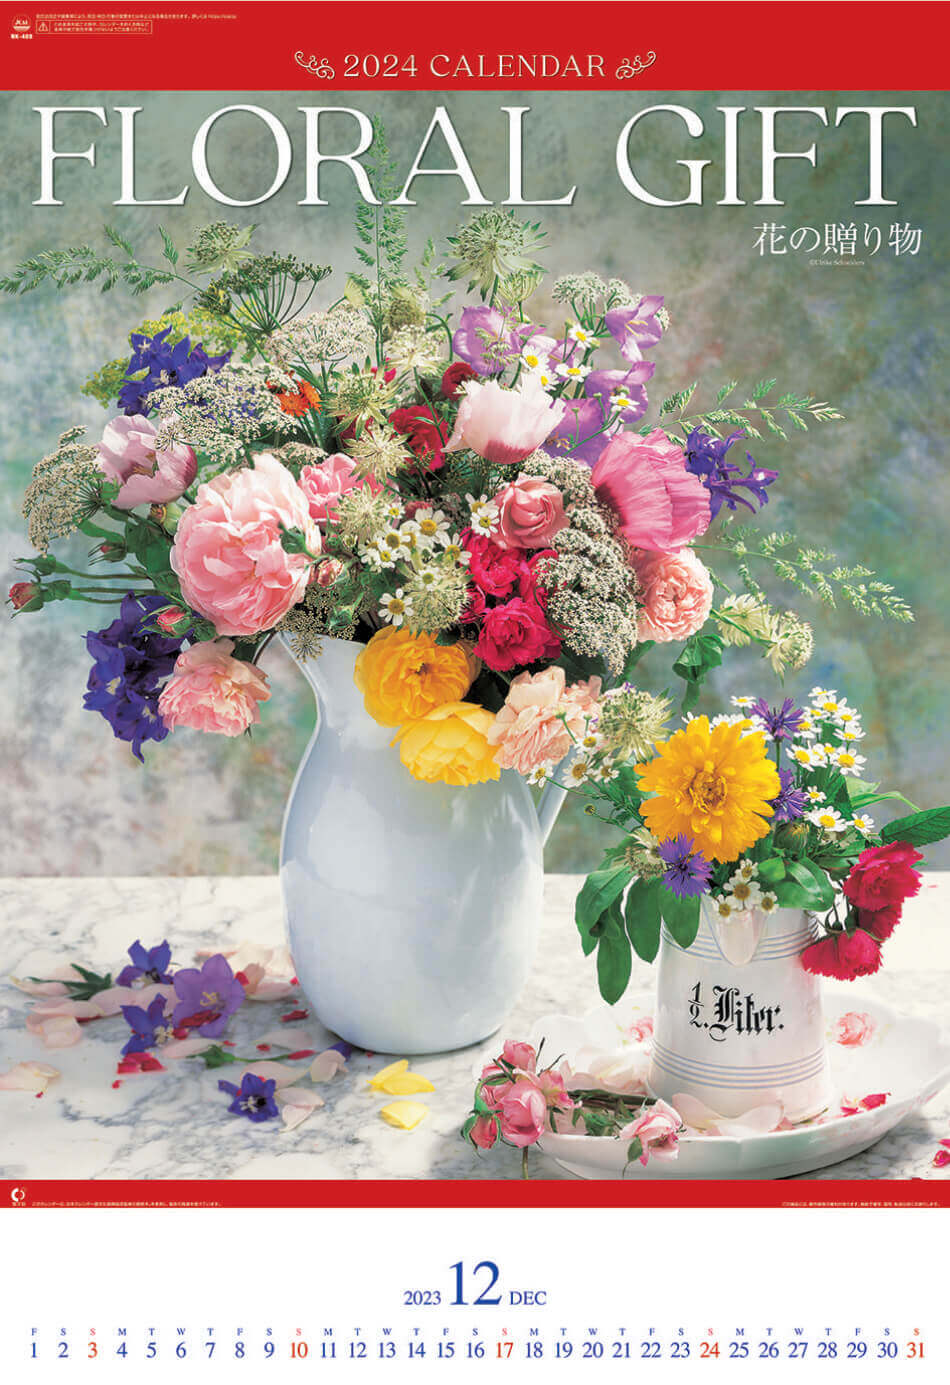  花の贈り物(フィルムカレンダー) 2024年カレンダーの画像